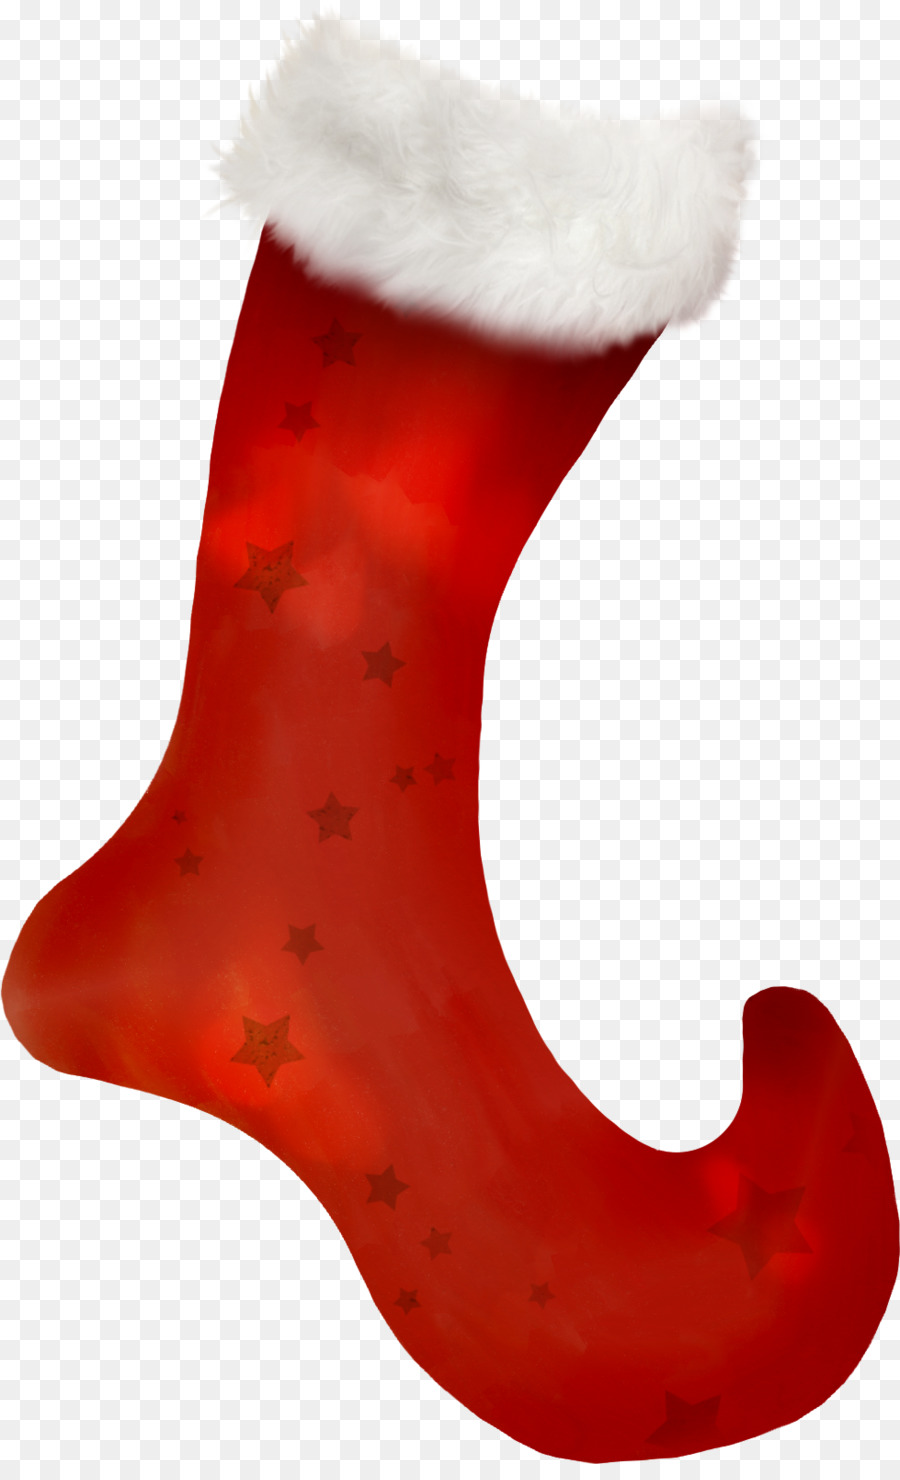 Christmas stocking Drawing Christmas decoration Boot - Christmas decoration Christmas boots png download - 979*1593 - Free Transparent Christmas Stocking png Download.